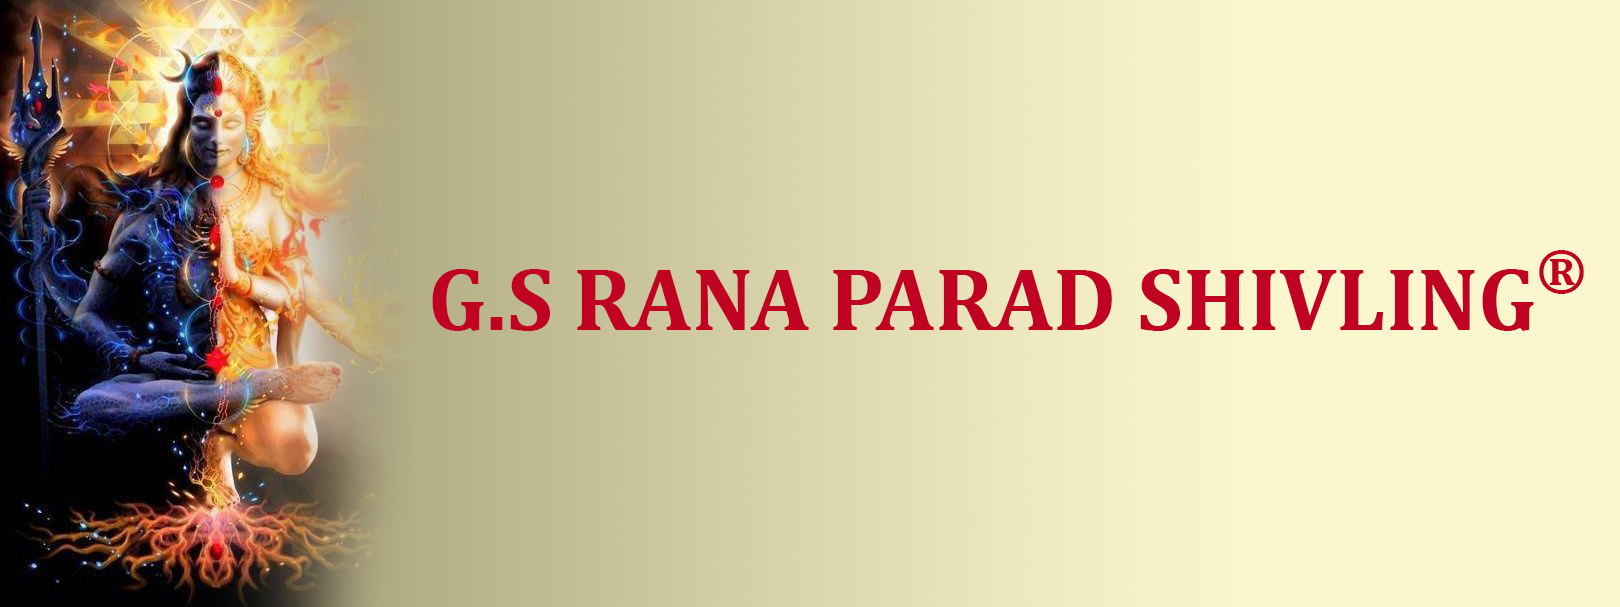 Gs Rana Parad Shivling